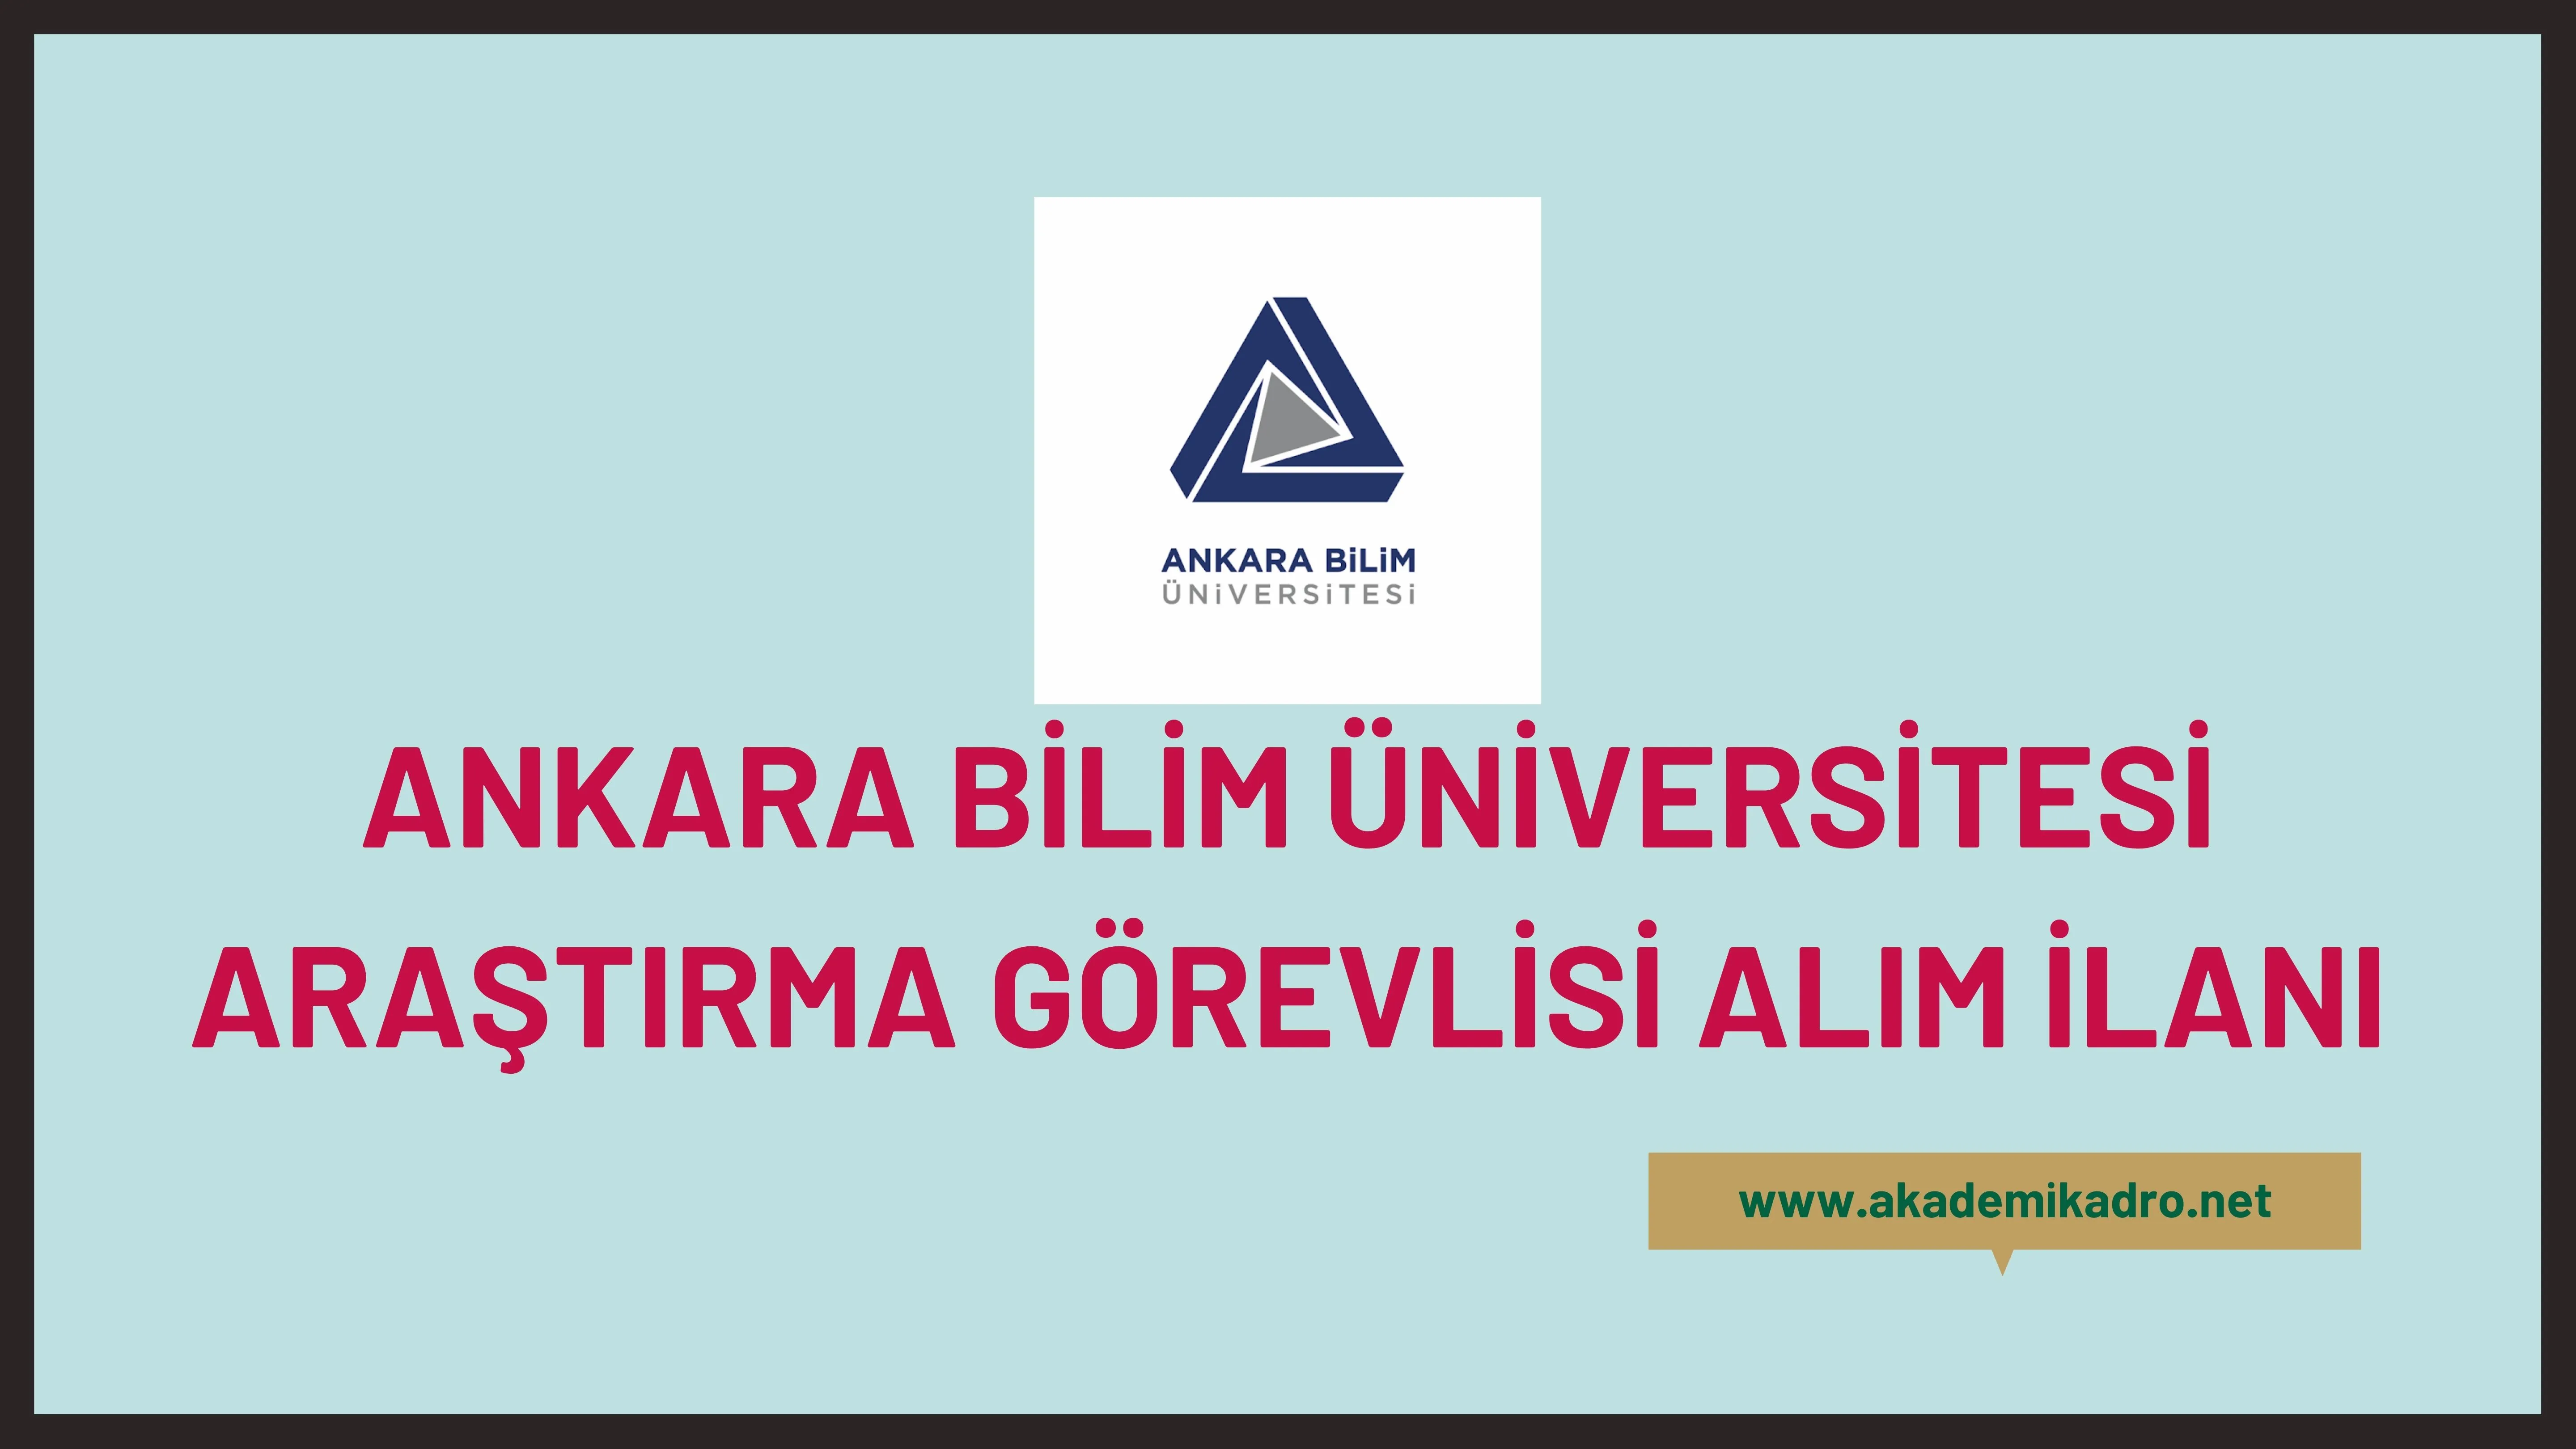 Ankara Bilim Üniversitesi 2 Araştırma görevlisi alacaktır.